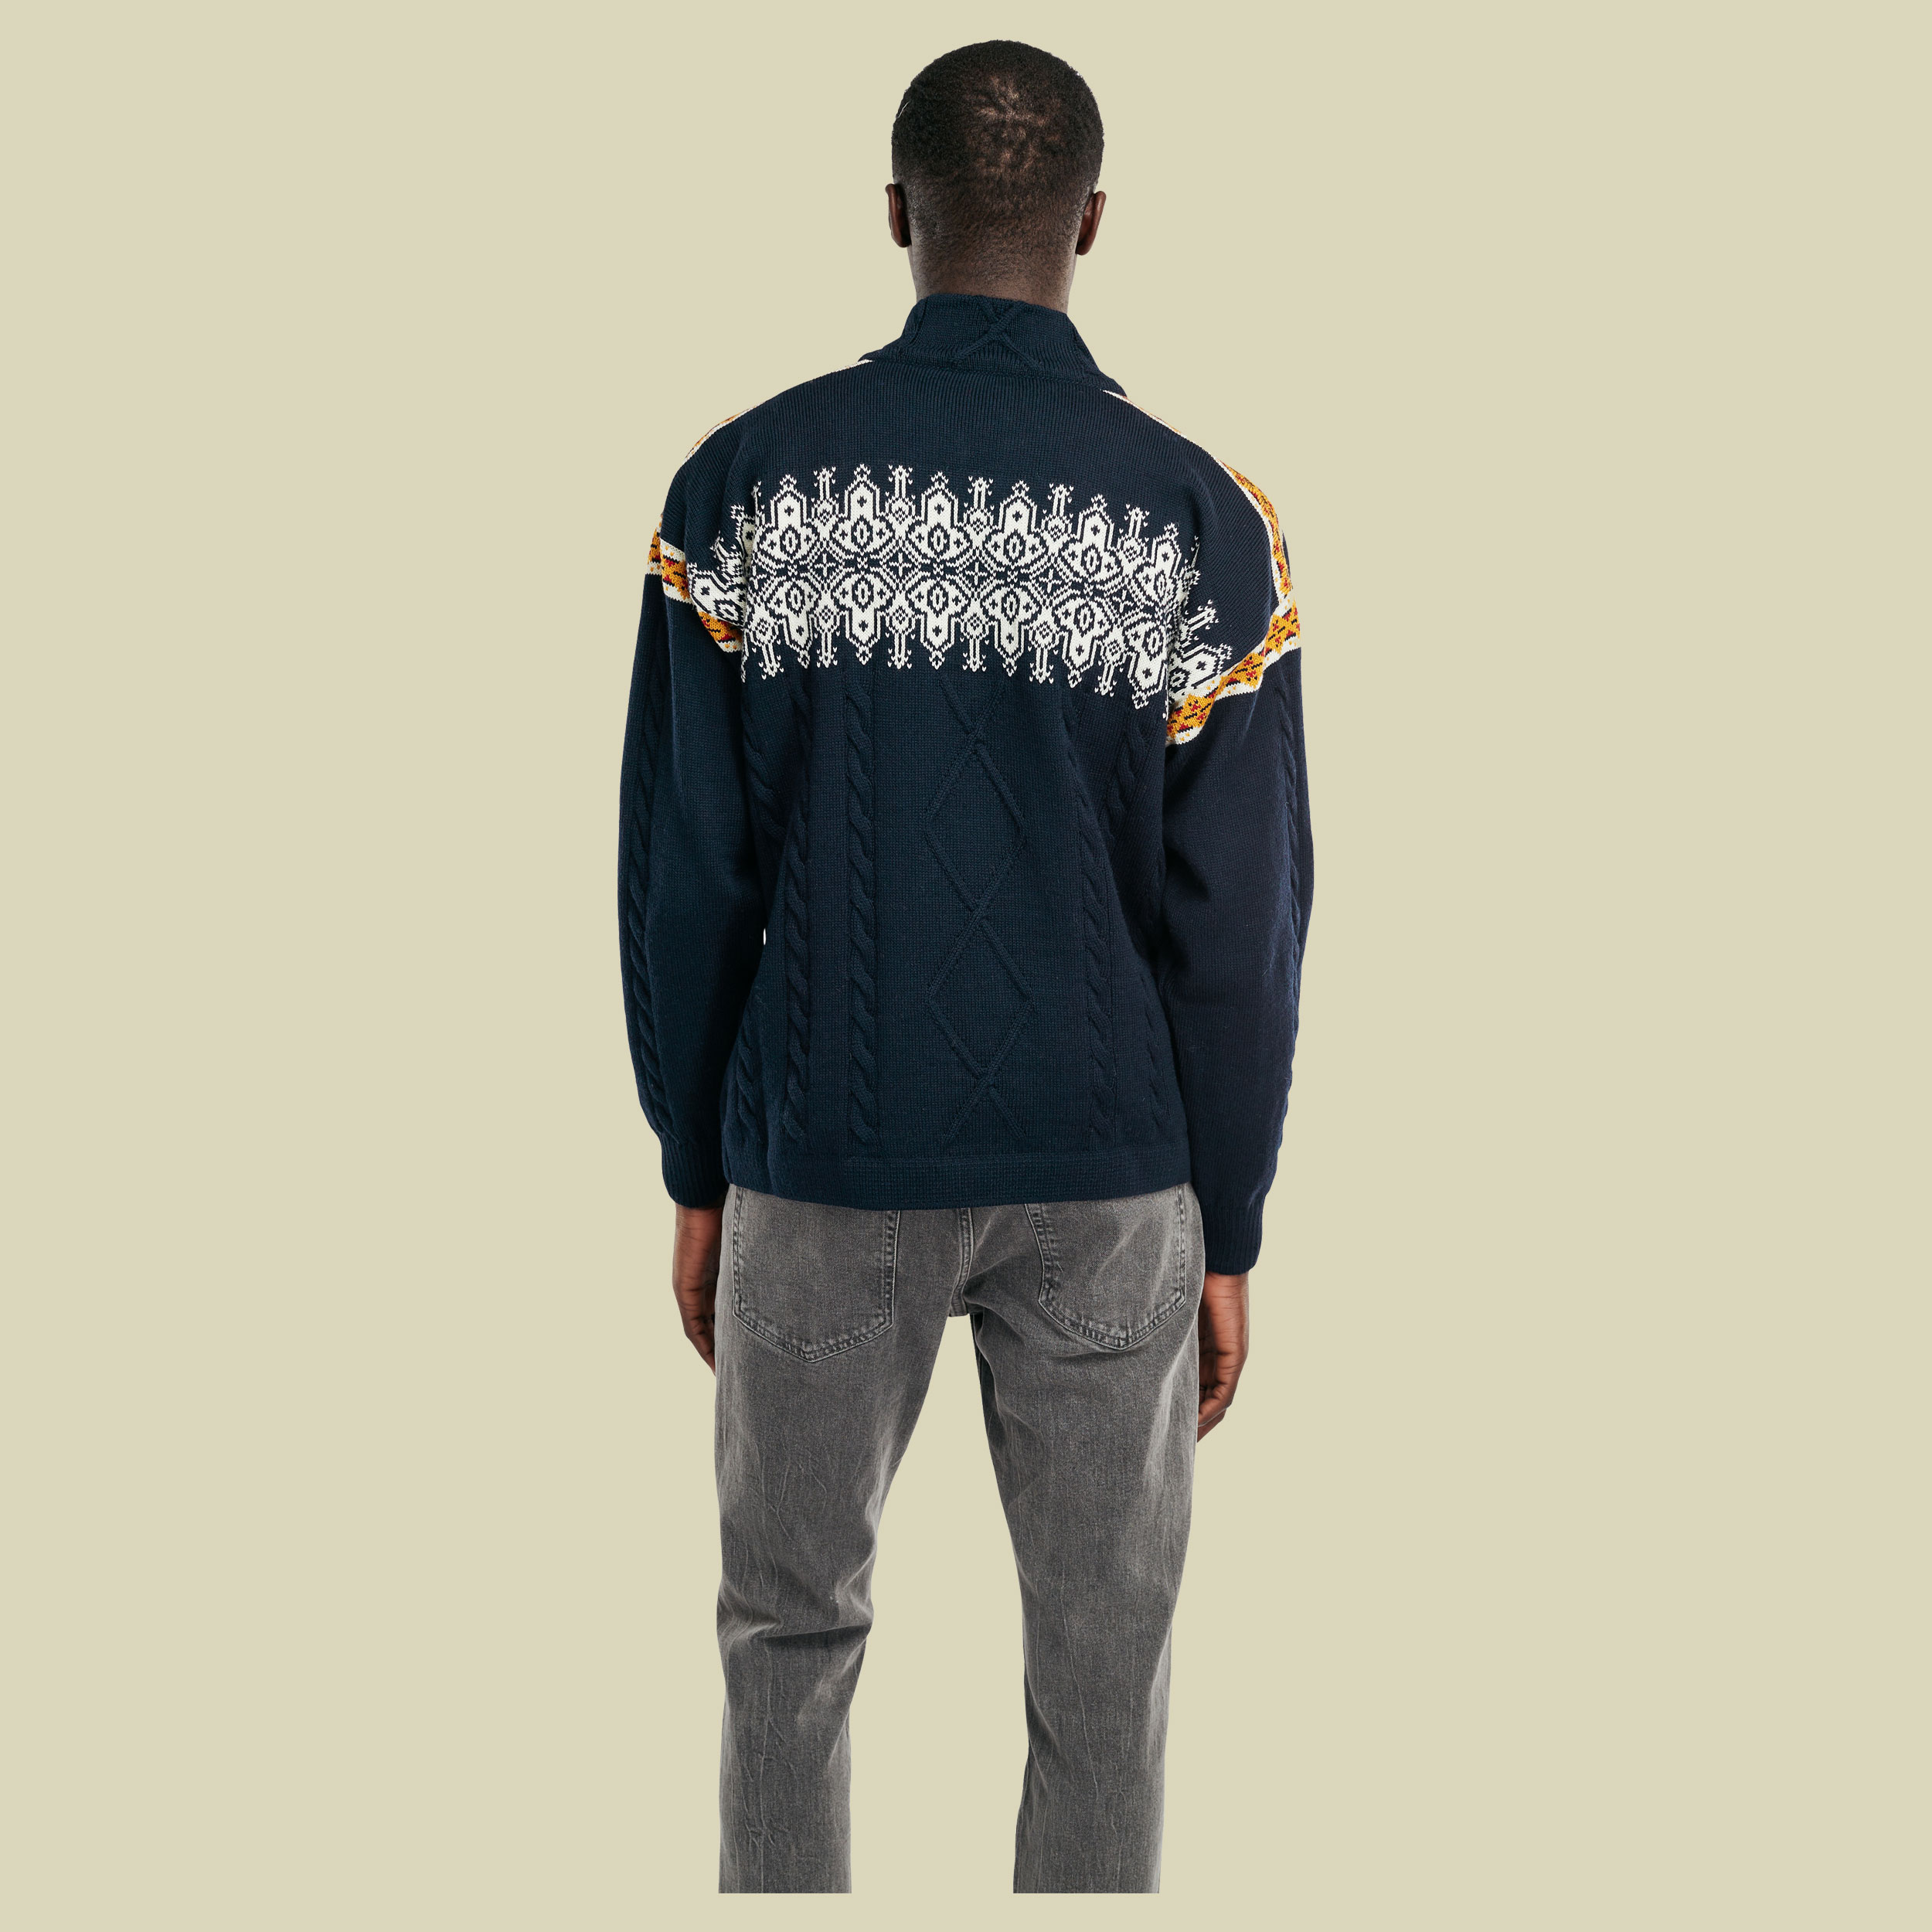 Aspoy Sweater Men Größe M  Farbe navy/off white/mustard/raspberry